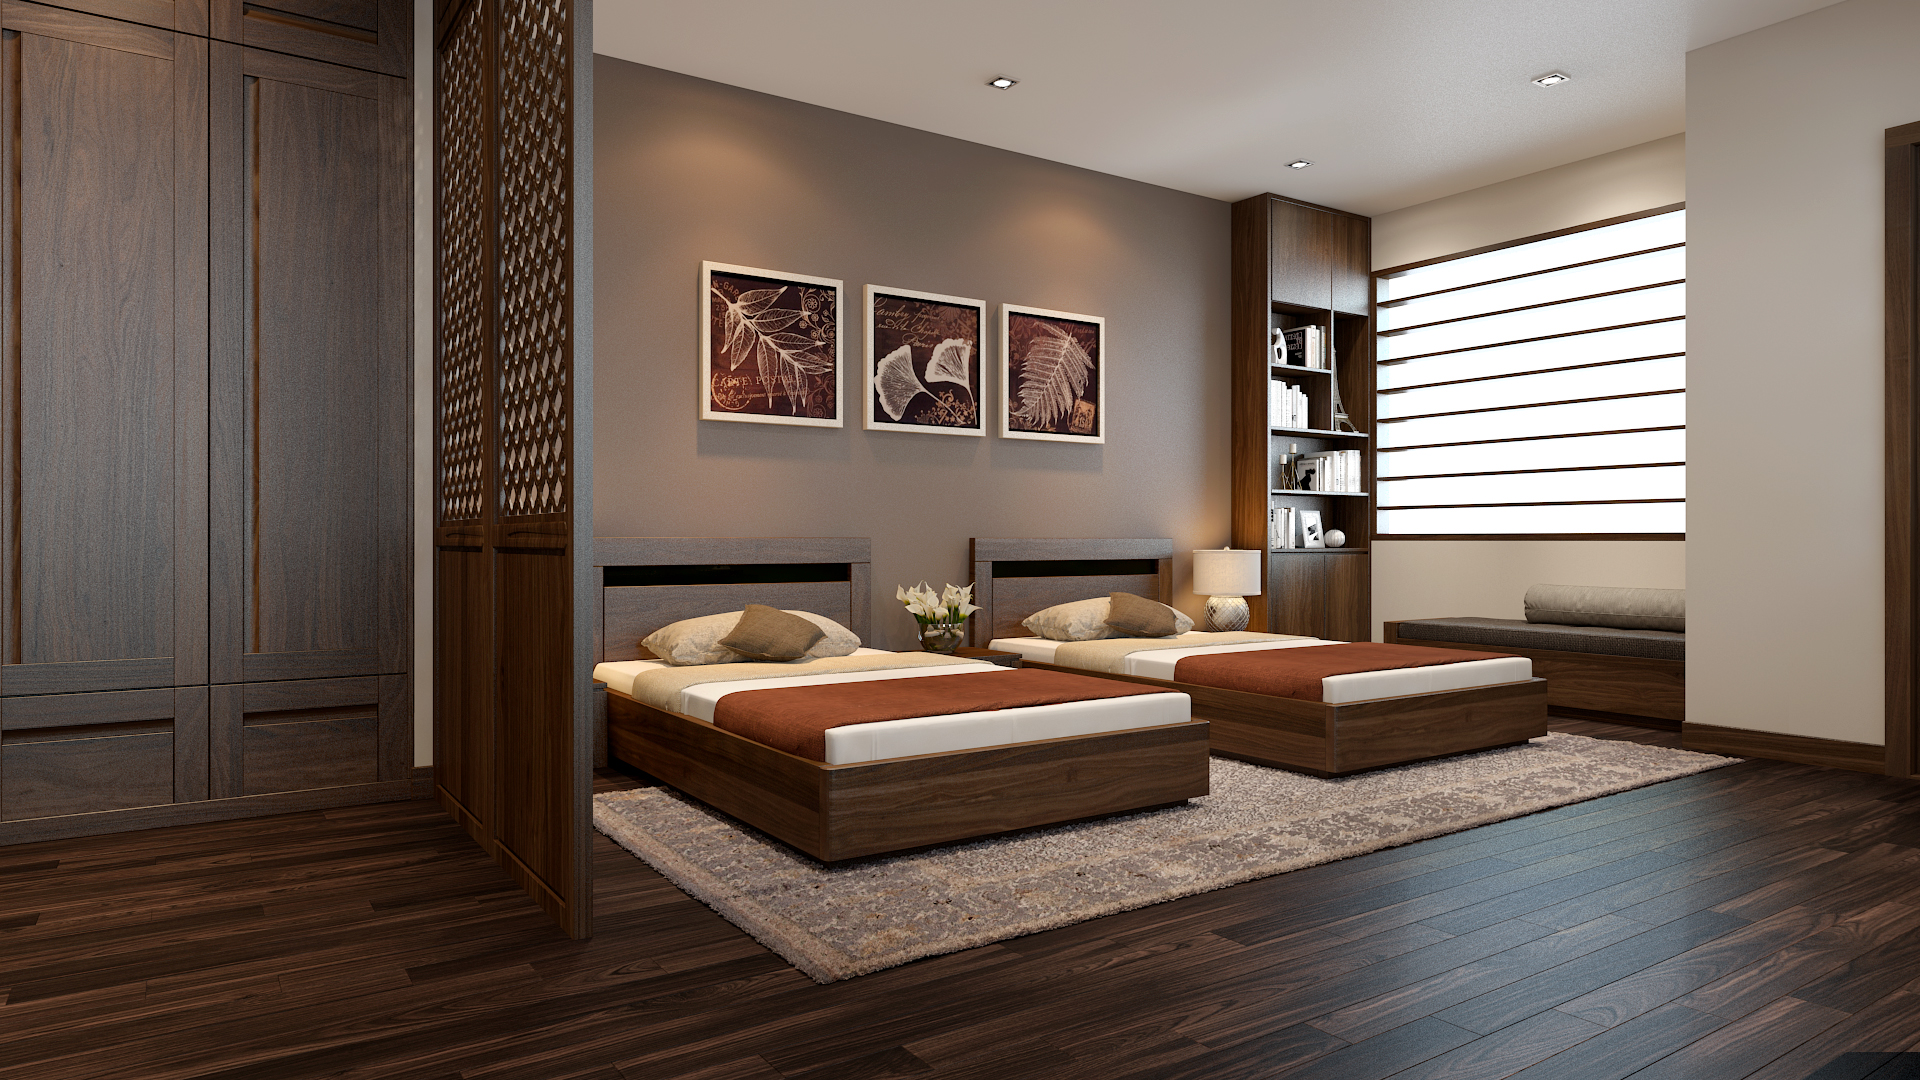 Thiết kế phòng ngủ khách sạn 2 giường đôi với tông màu nâu chủ đạo rất ấm cúng